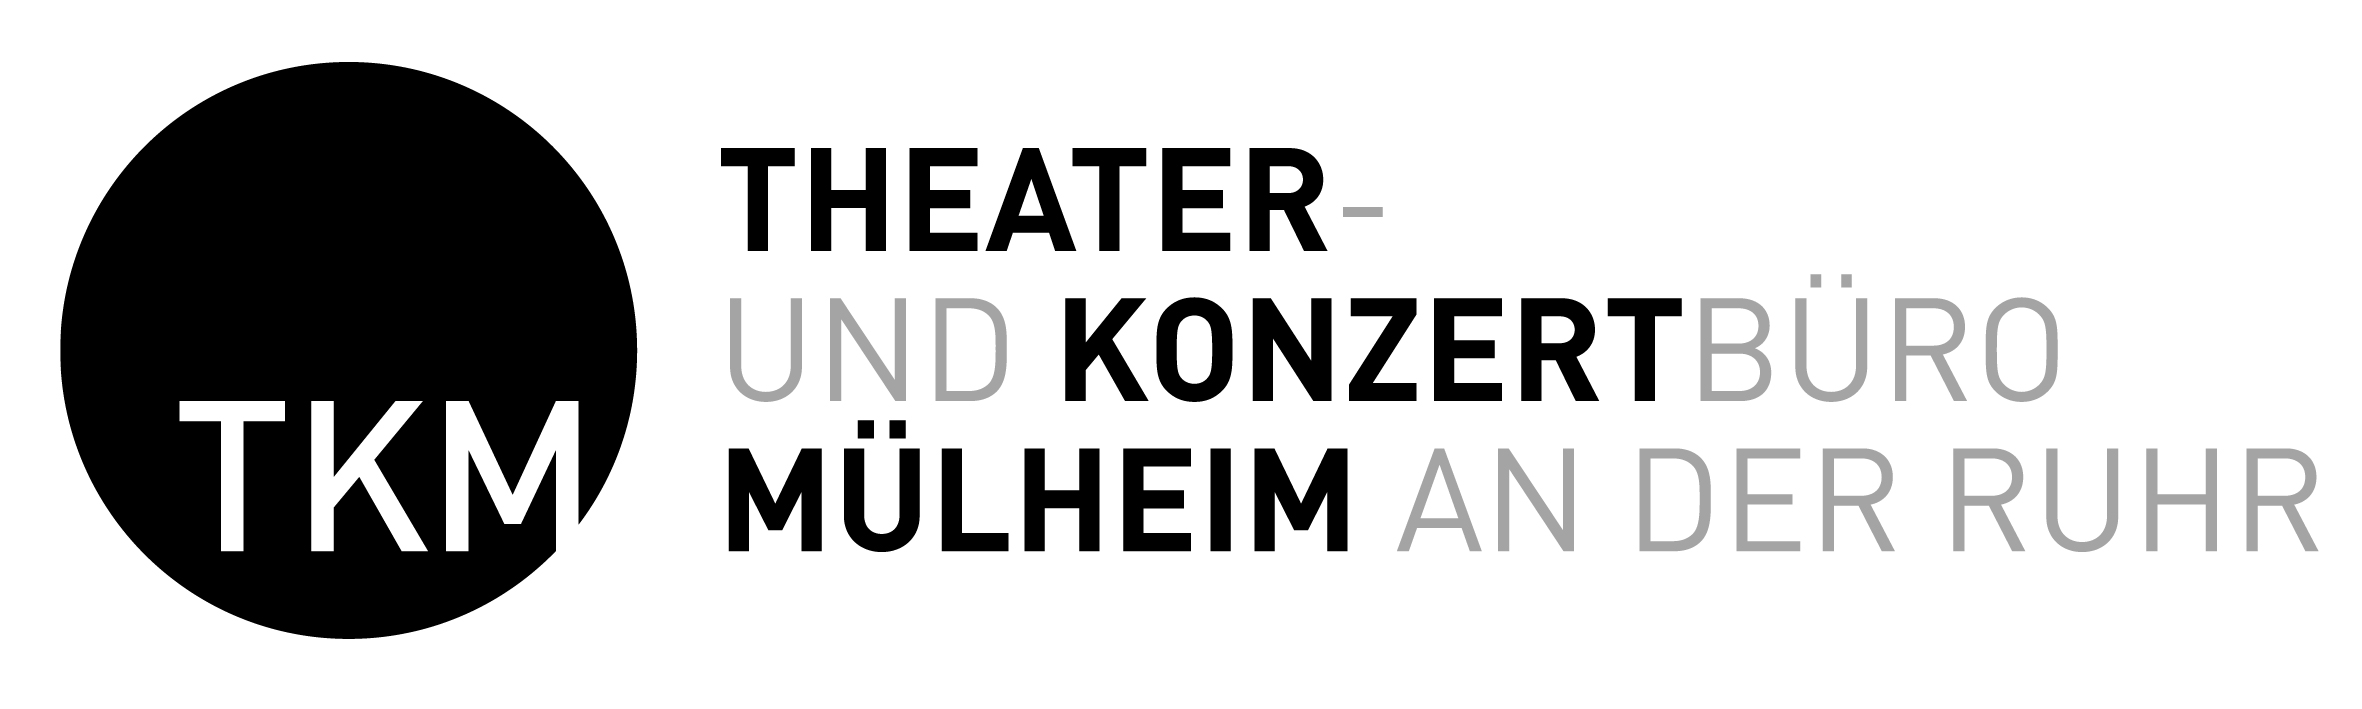 Theater und Konzertbüro Mülheim an der Ruhr